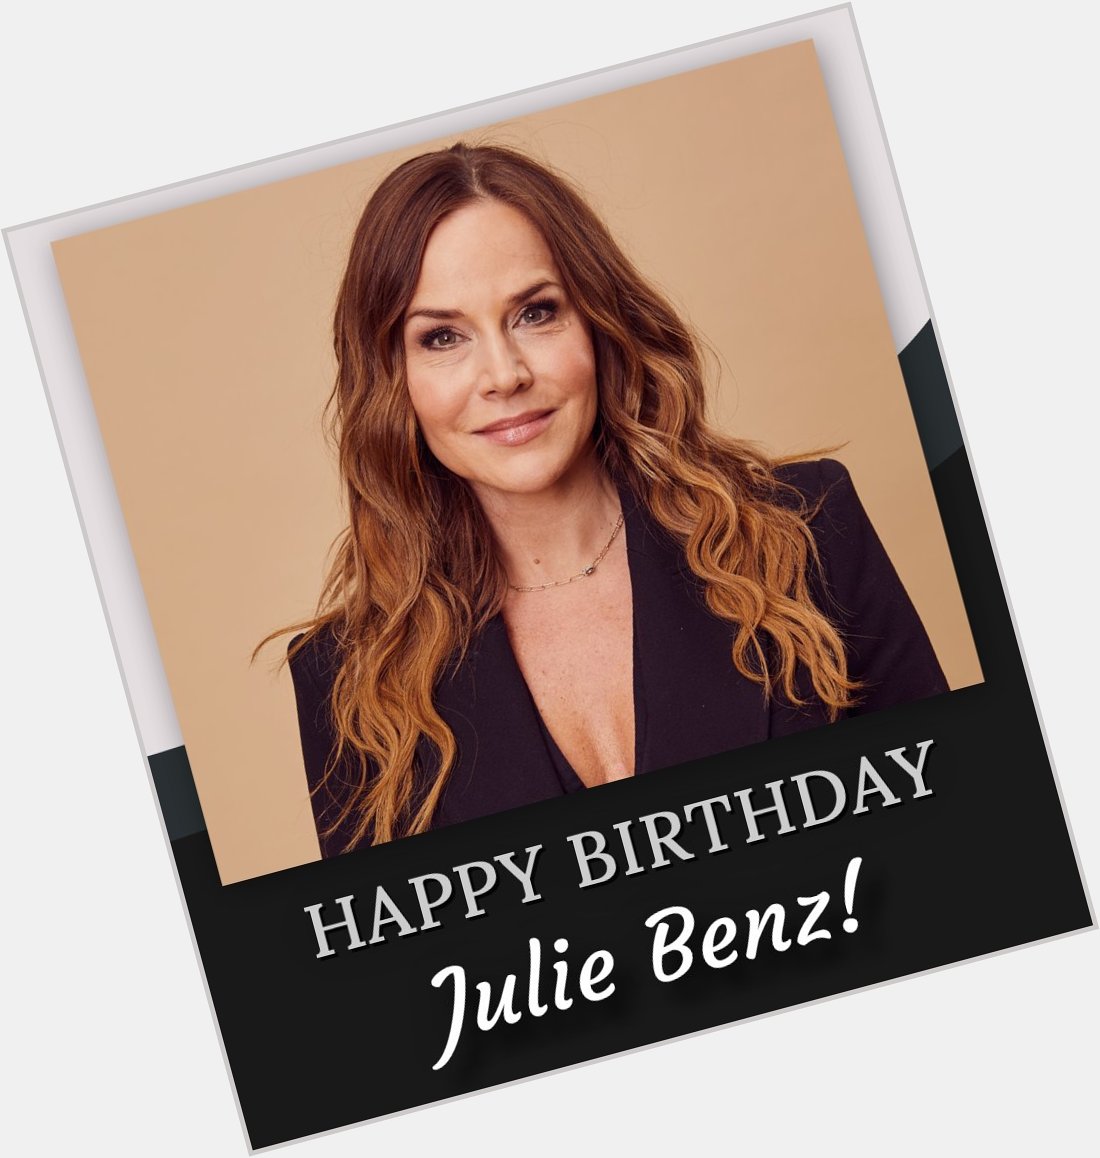 Happy birthday, Julie Benz! 